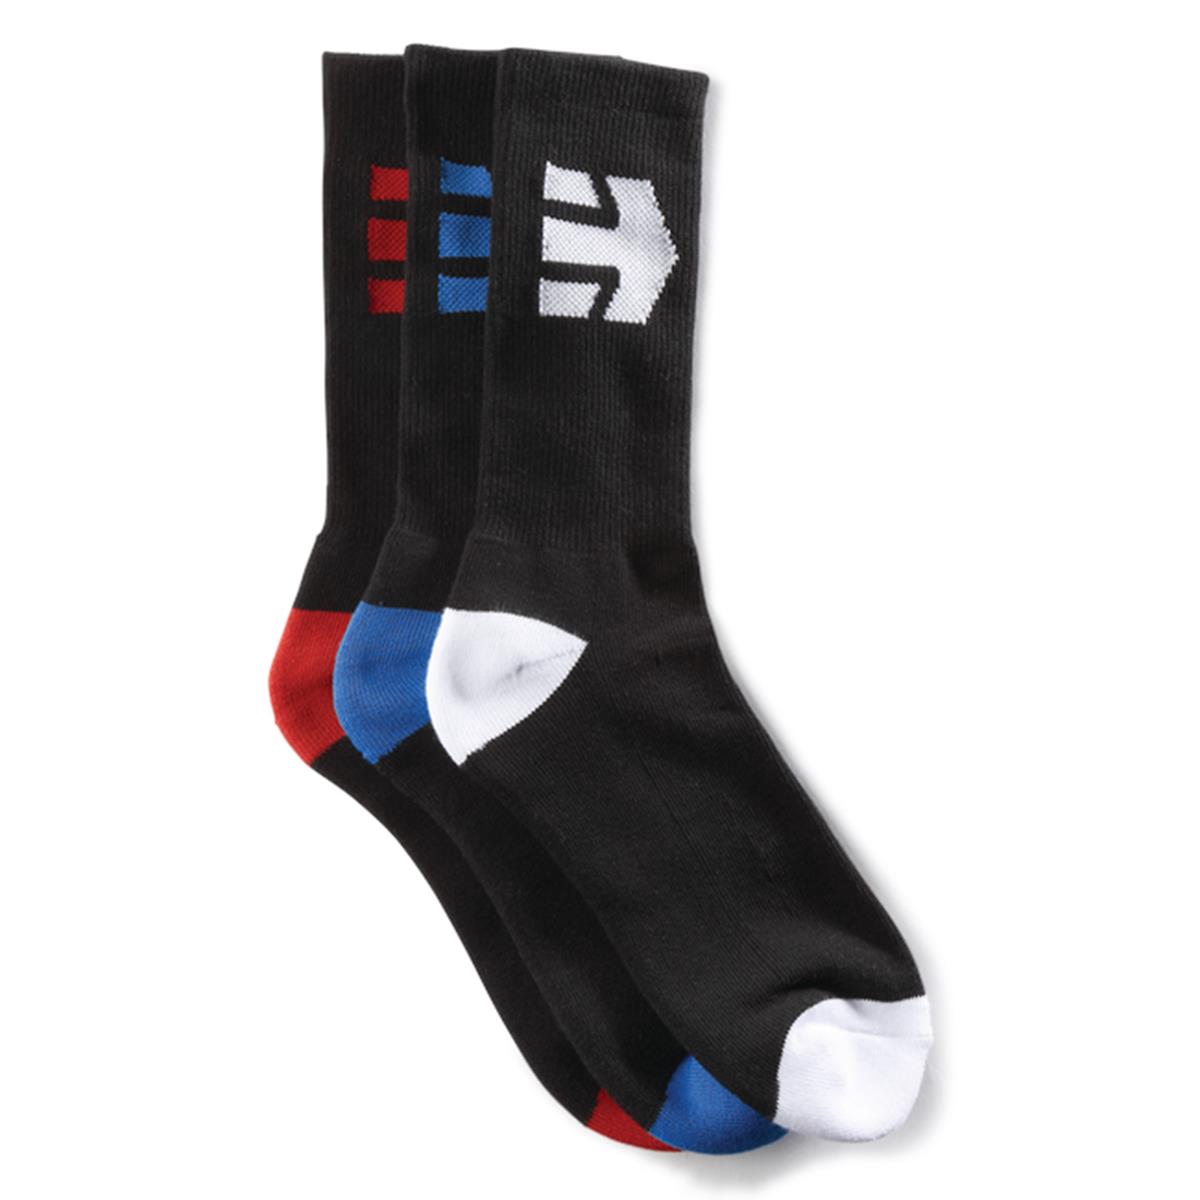 Etnies Socks Direct Black, 3 Pack